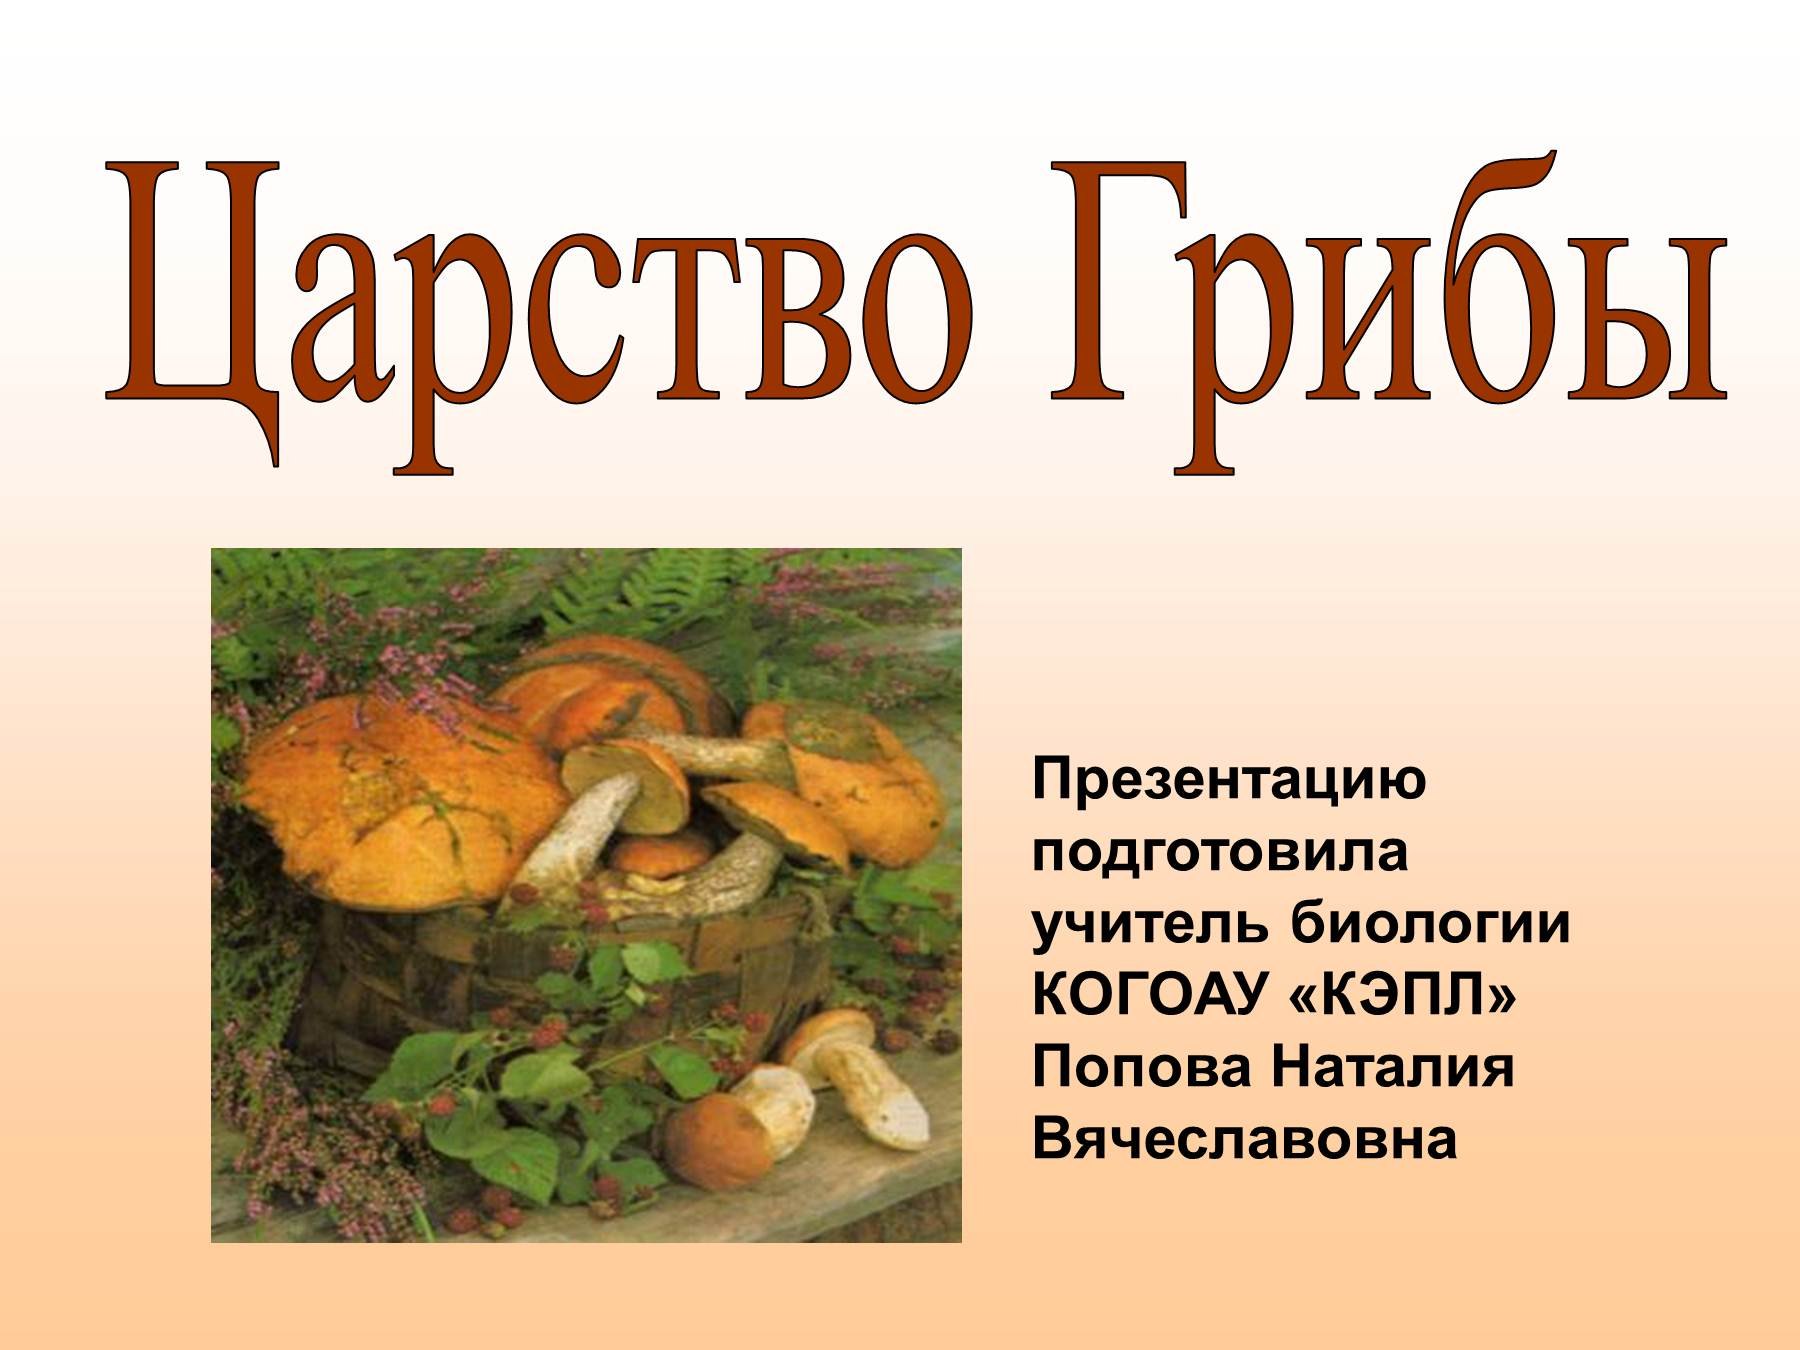 Дмитрий Тихомиров царство грибов